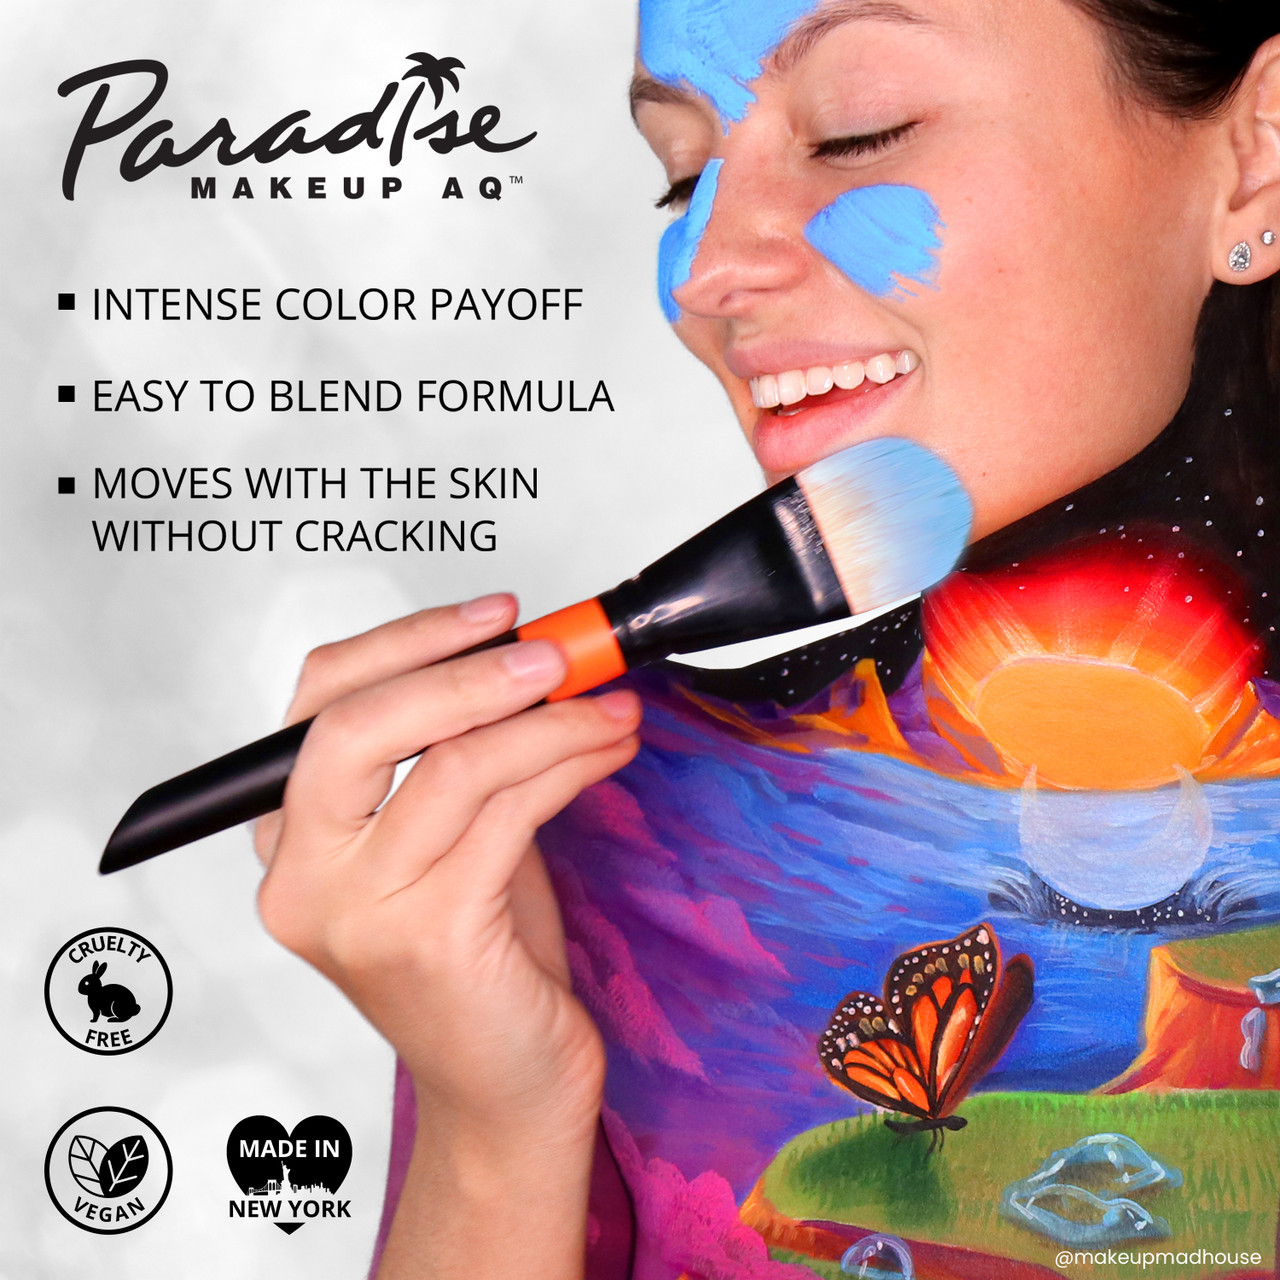 Mehron Paradise AQ - 8 Color Palettes 